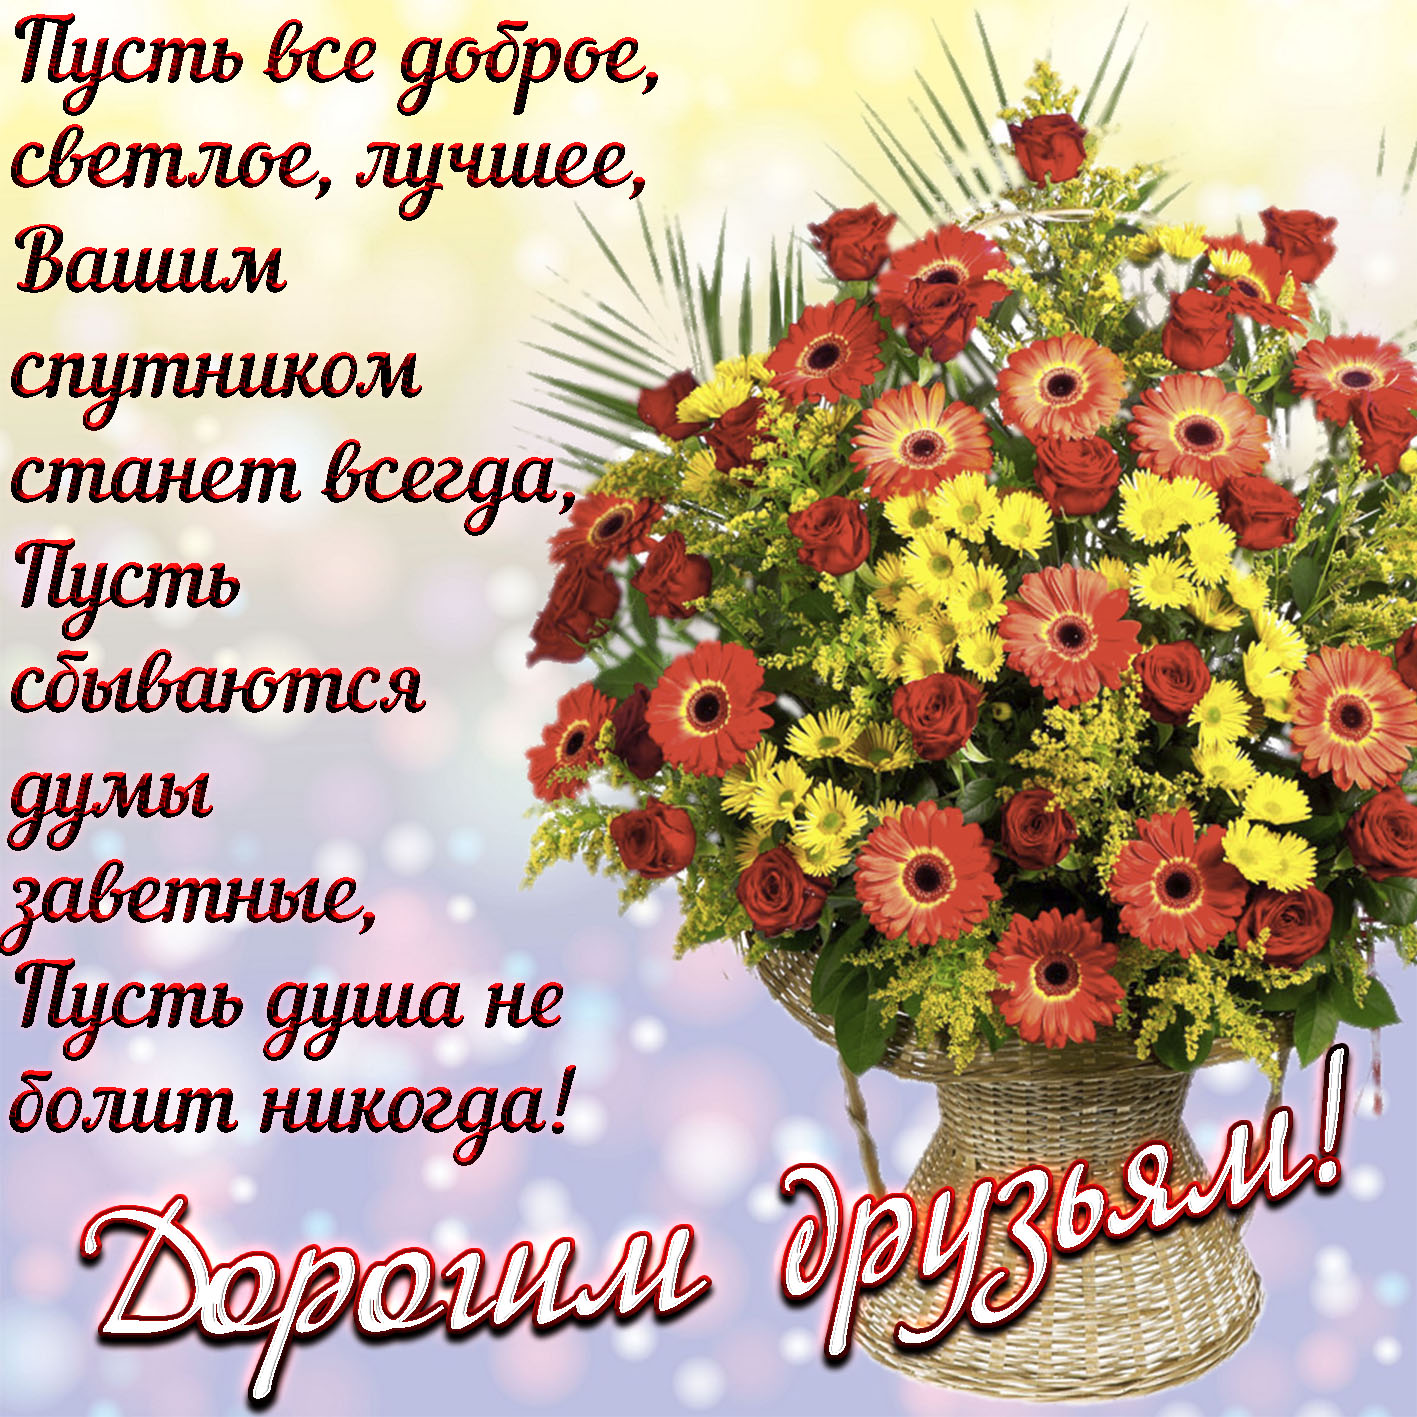 Поздравление душевному человеку. Открытки с пожеланиями. Красивые открытки с пожеланиями. Krasivye pojelaniya. Поздравления на каждый день в картинках красивые.